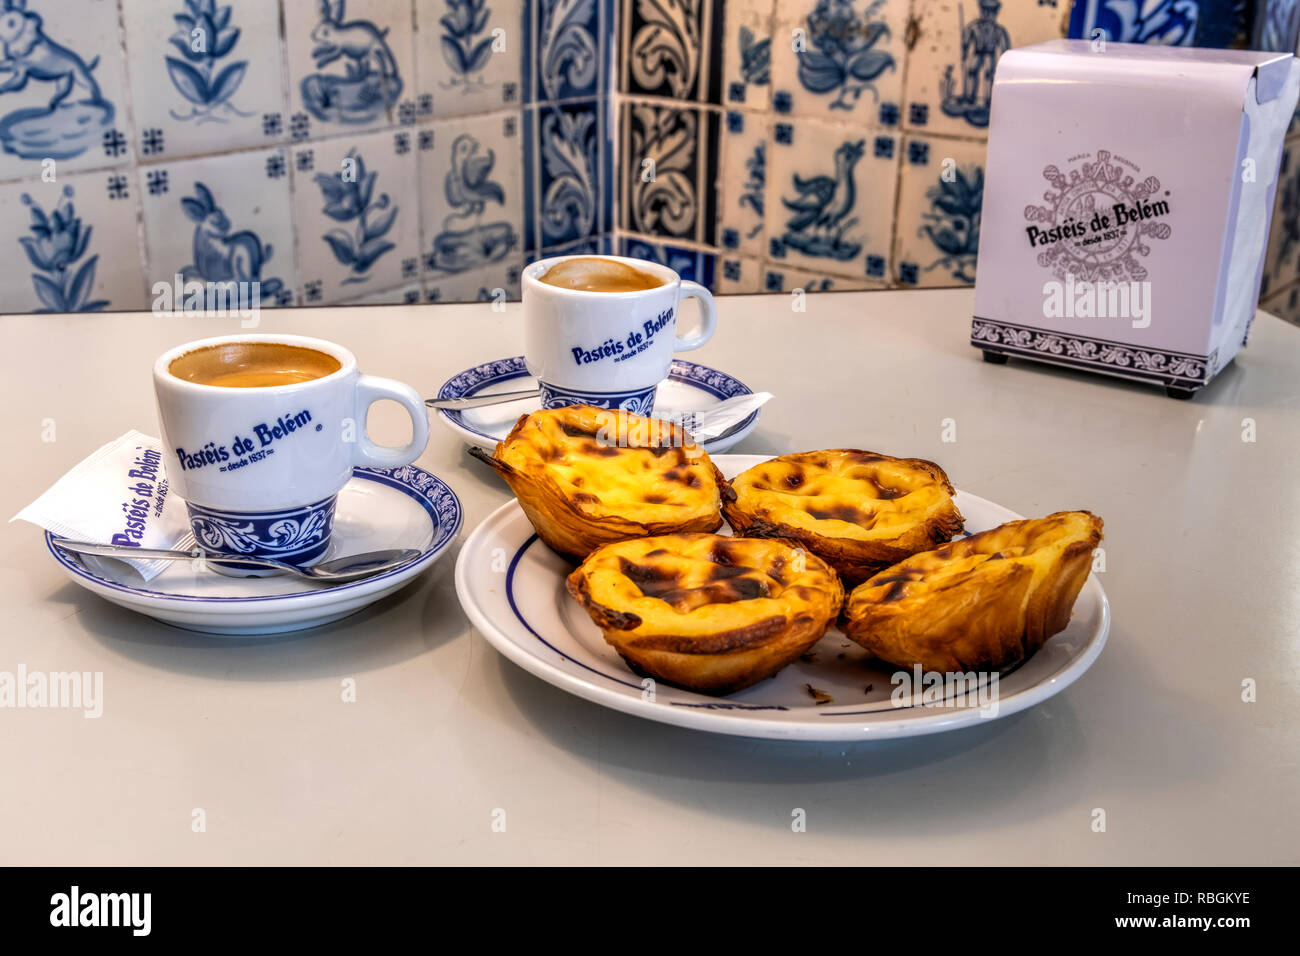 Pastel de Belem o Pasteis de nata crema pasticcera crostate servito con una tazza di caffè presso la storica Pasteis de Belem cafe in Belem, Lisbona, Portogallo Foto Stock